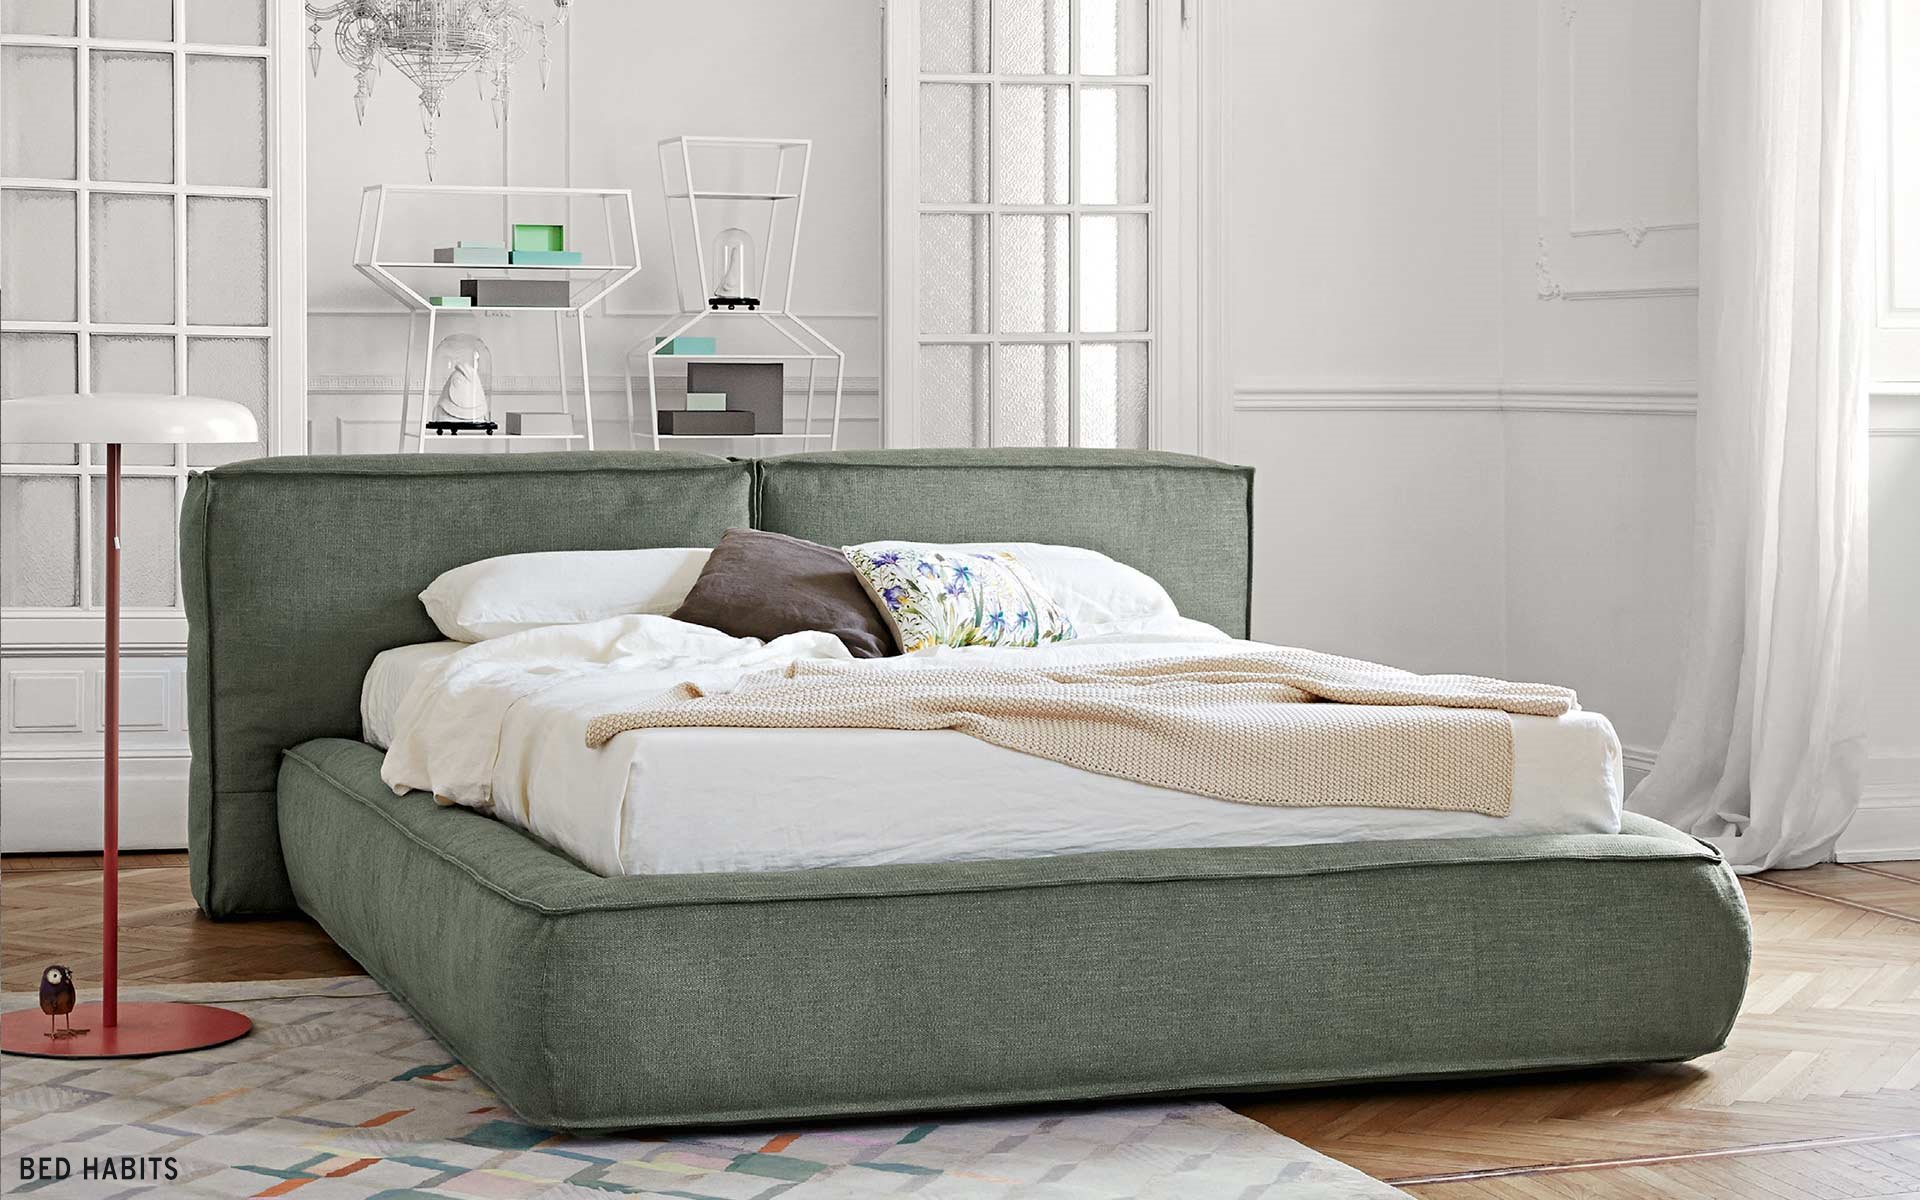 Designbed Fluff B Bed Habits 4